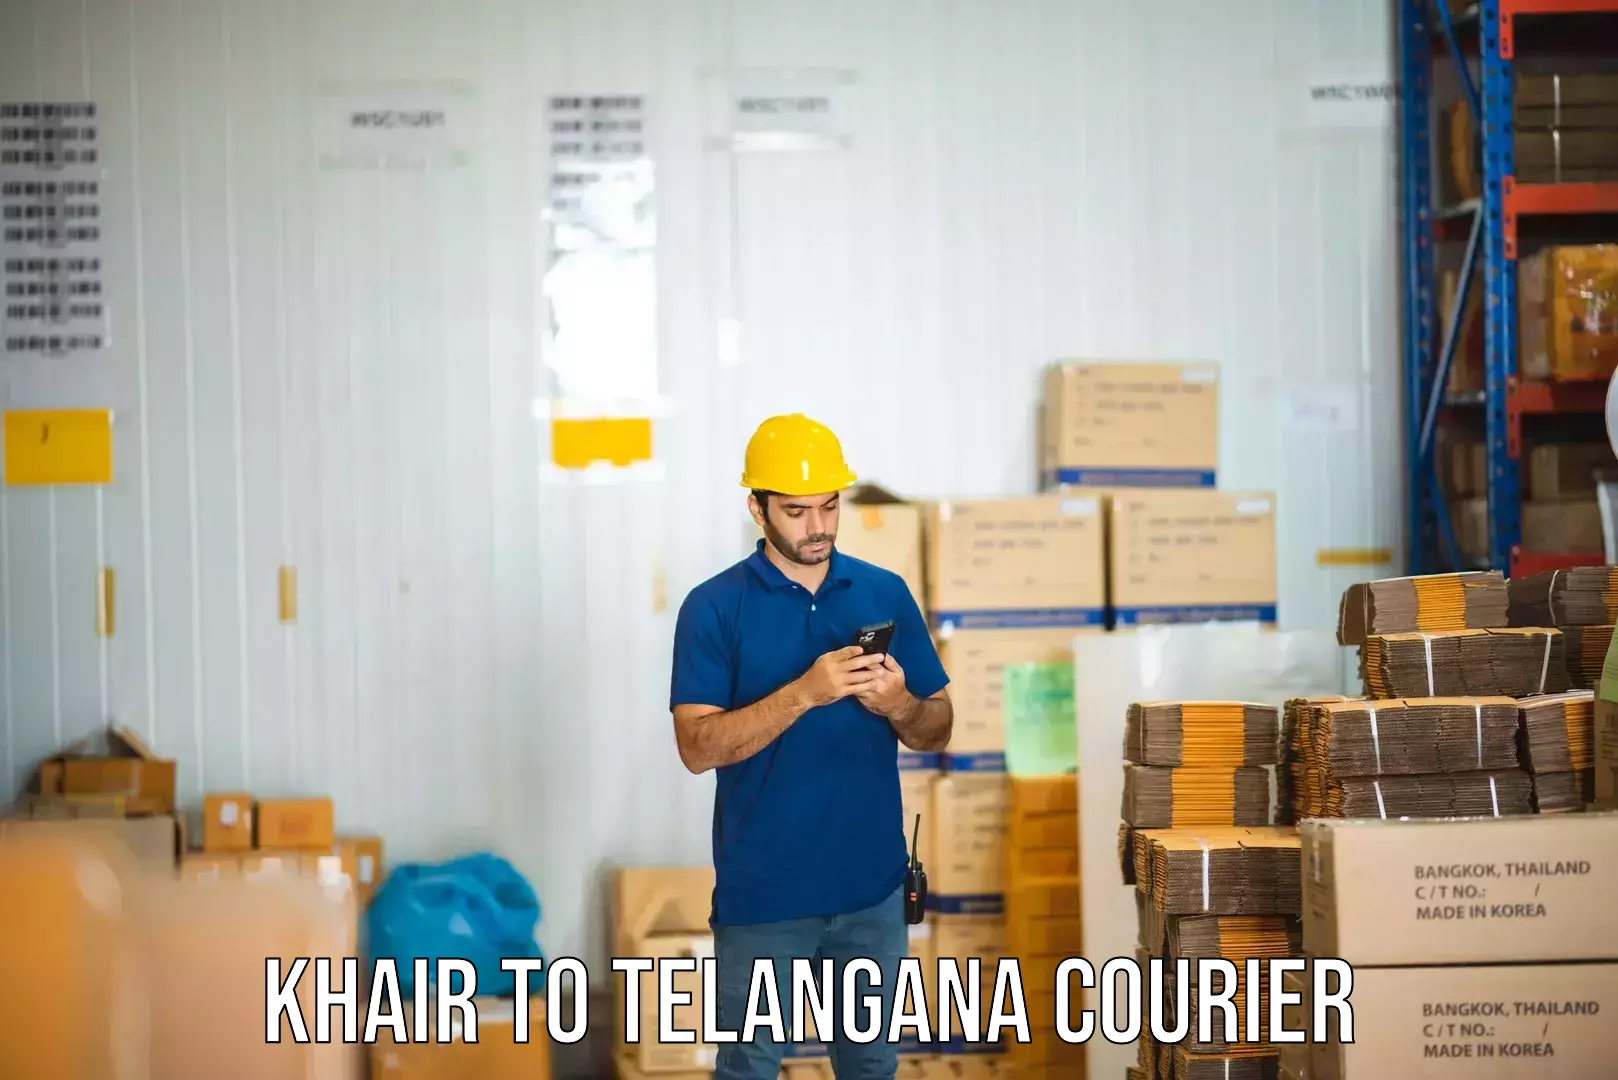 Reliable courier services Khair to Mudigonda